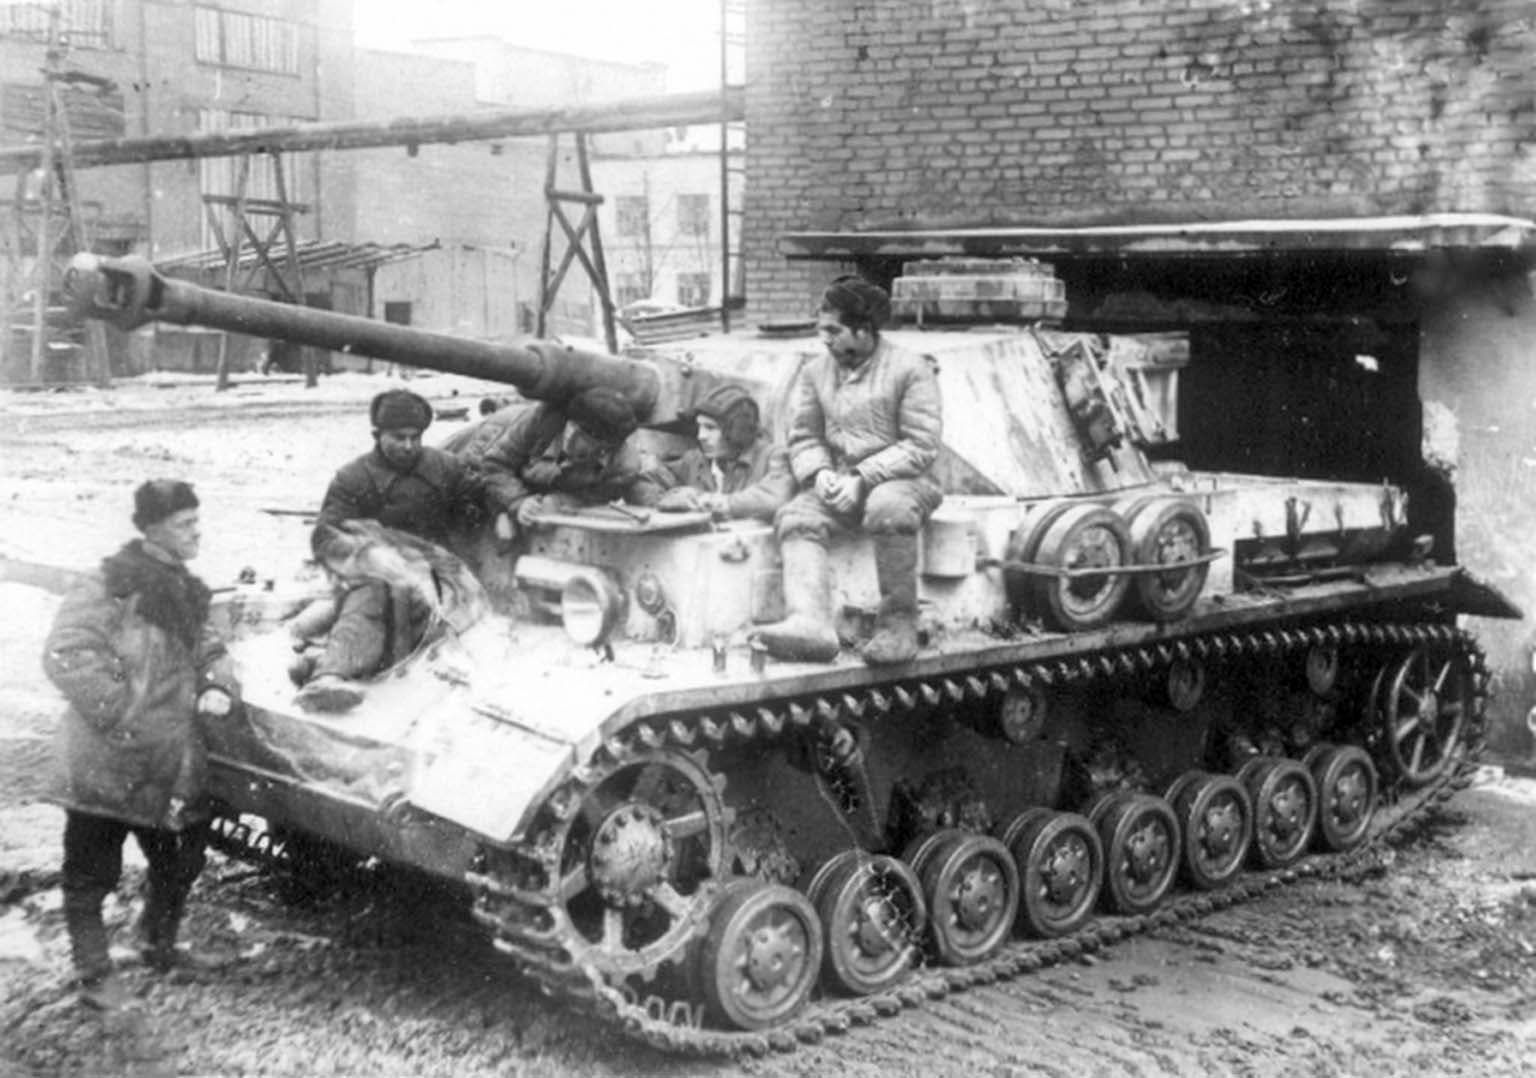 دبابة ألمانية بقبضة السوفيت بستالينغراد